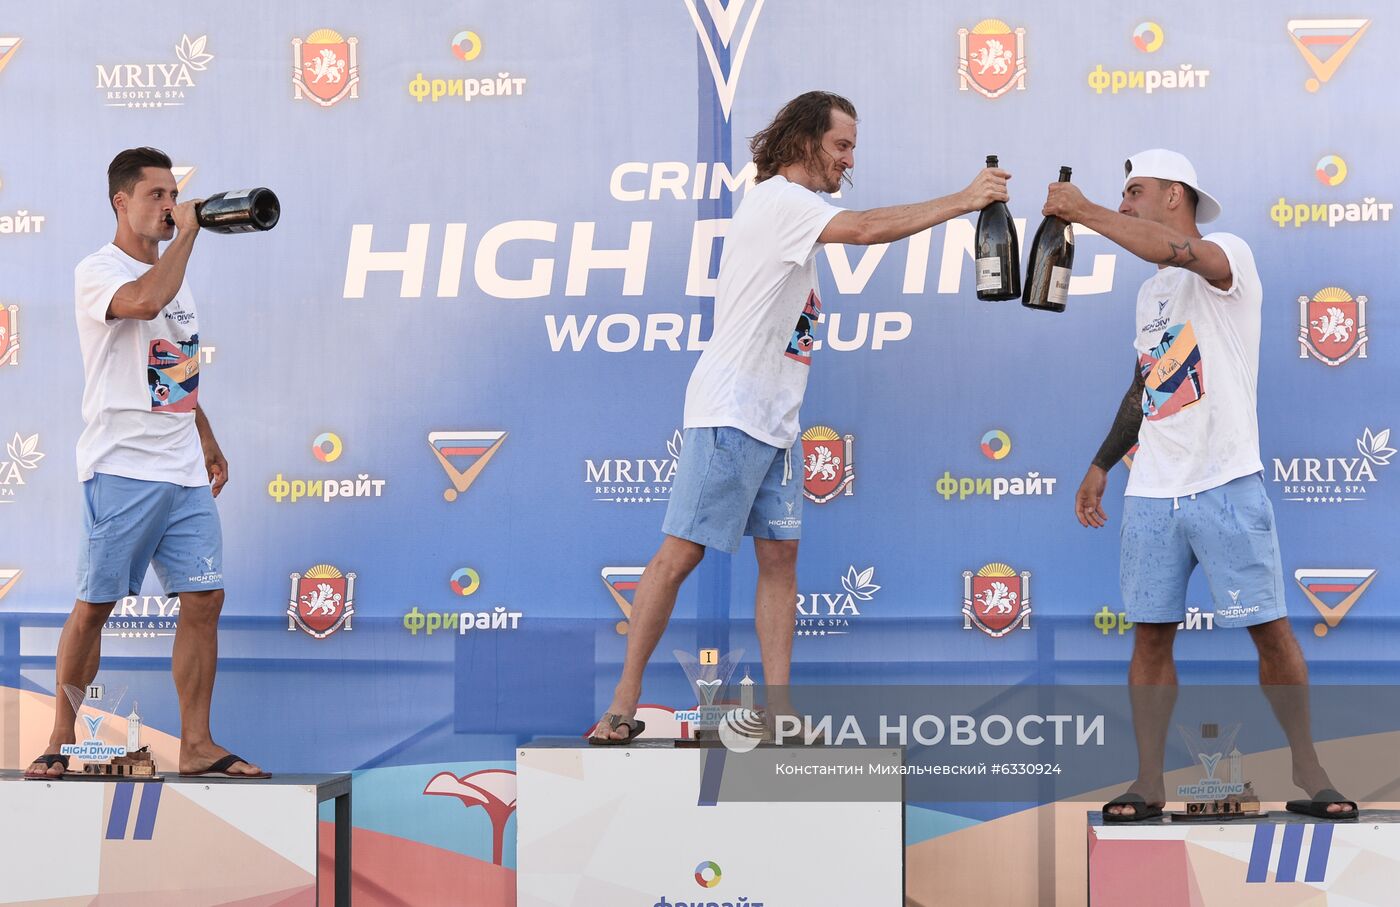 Соревнования по хайдайвингу в Крыму